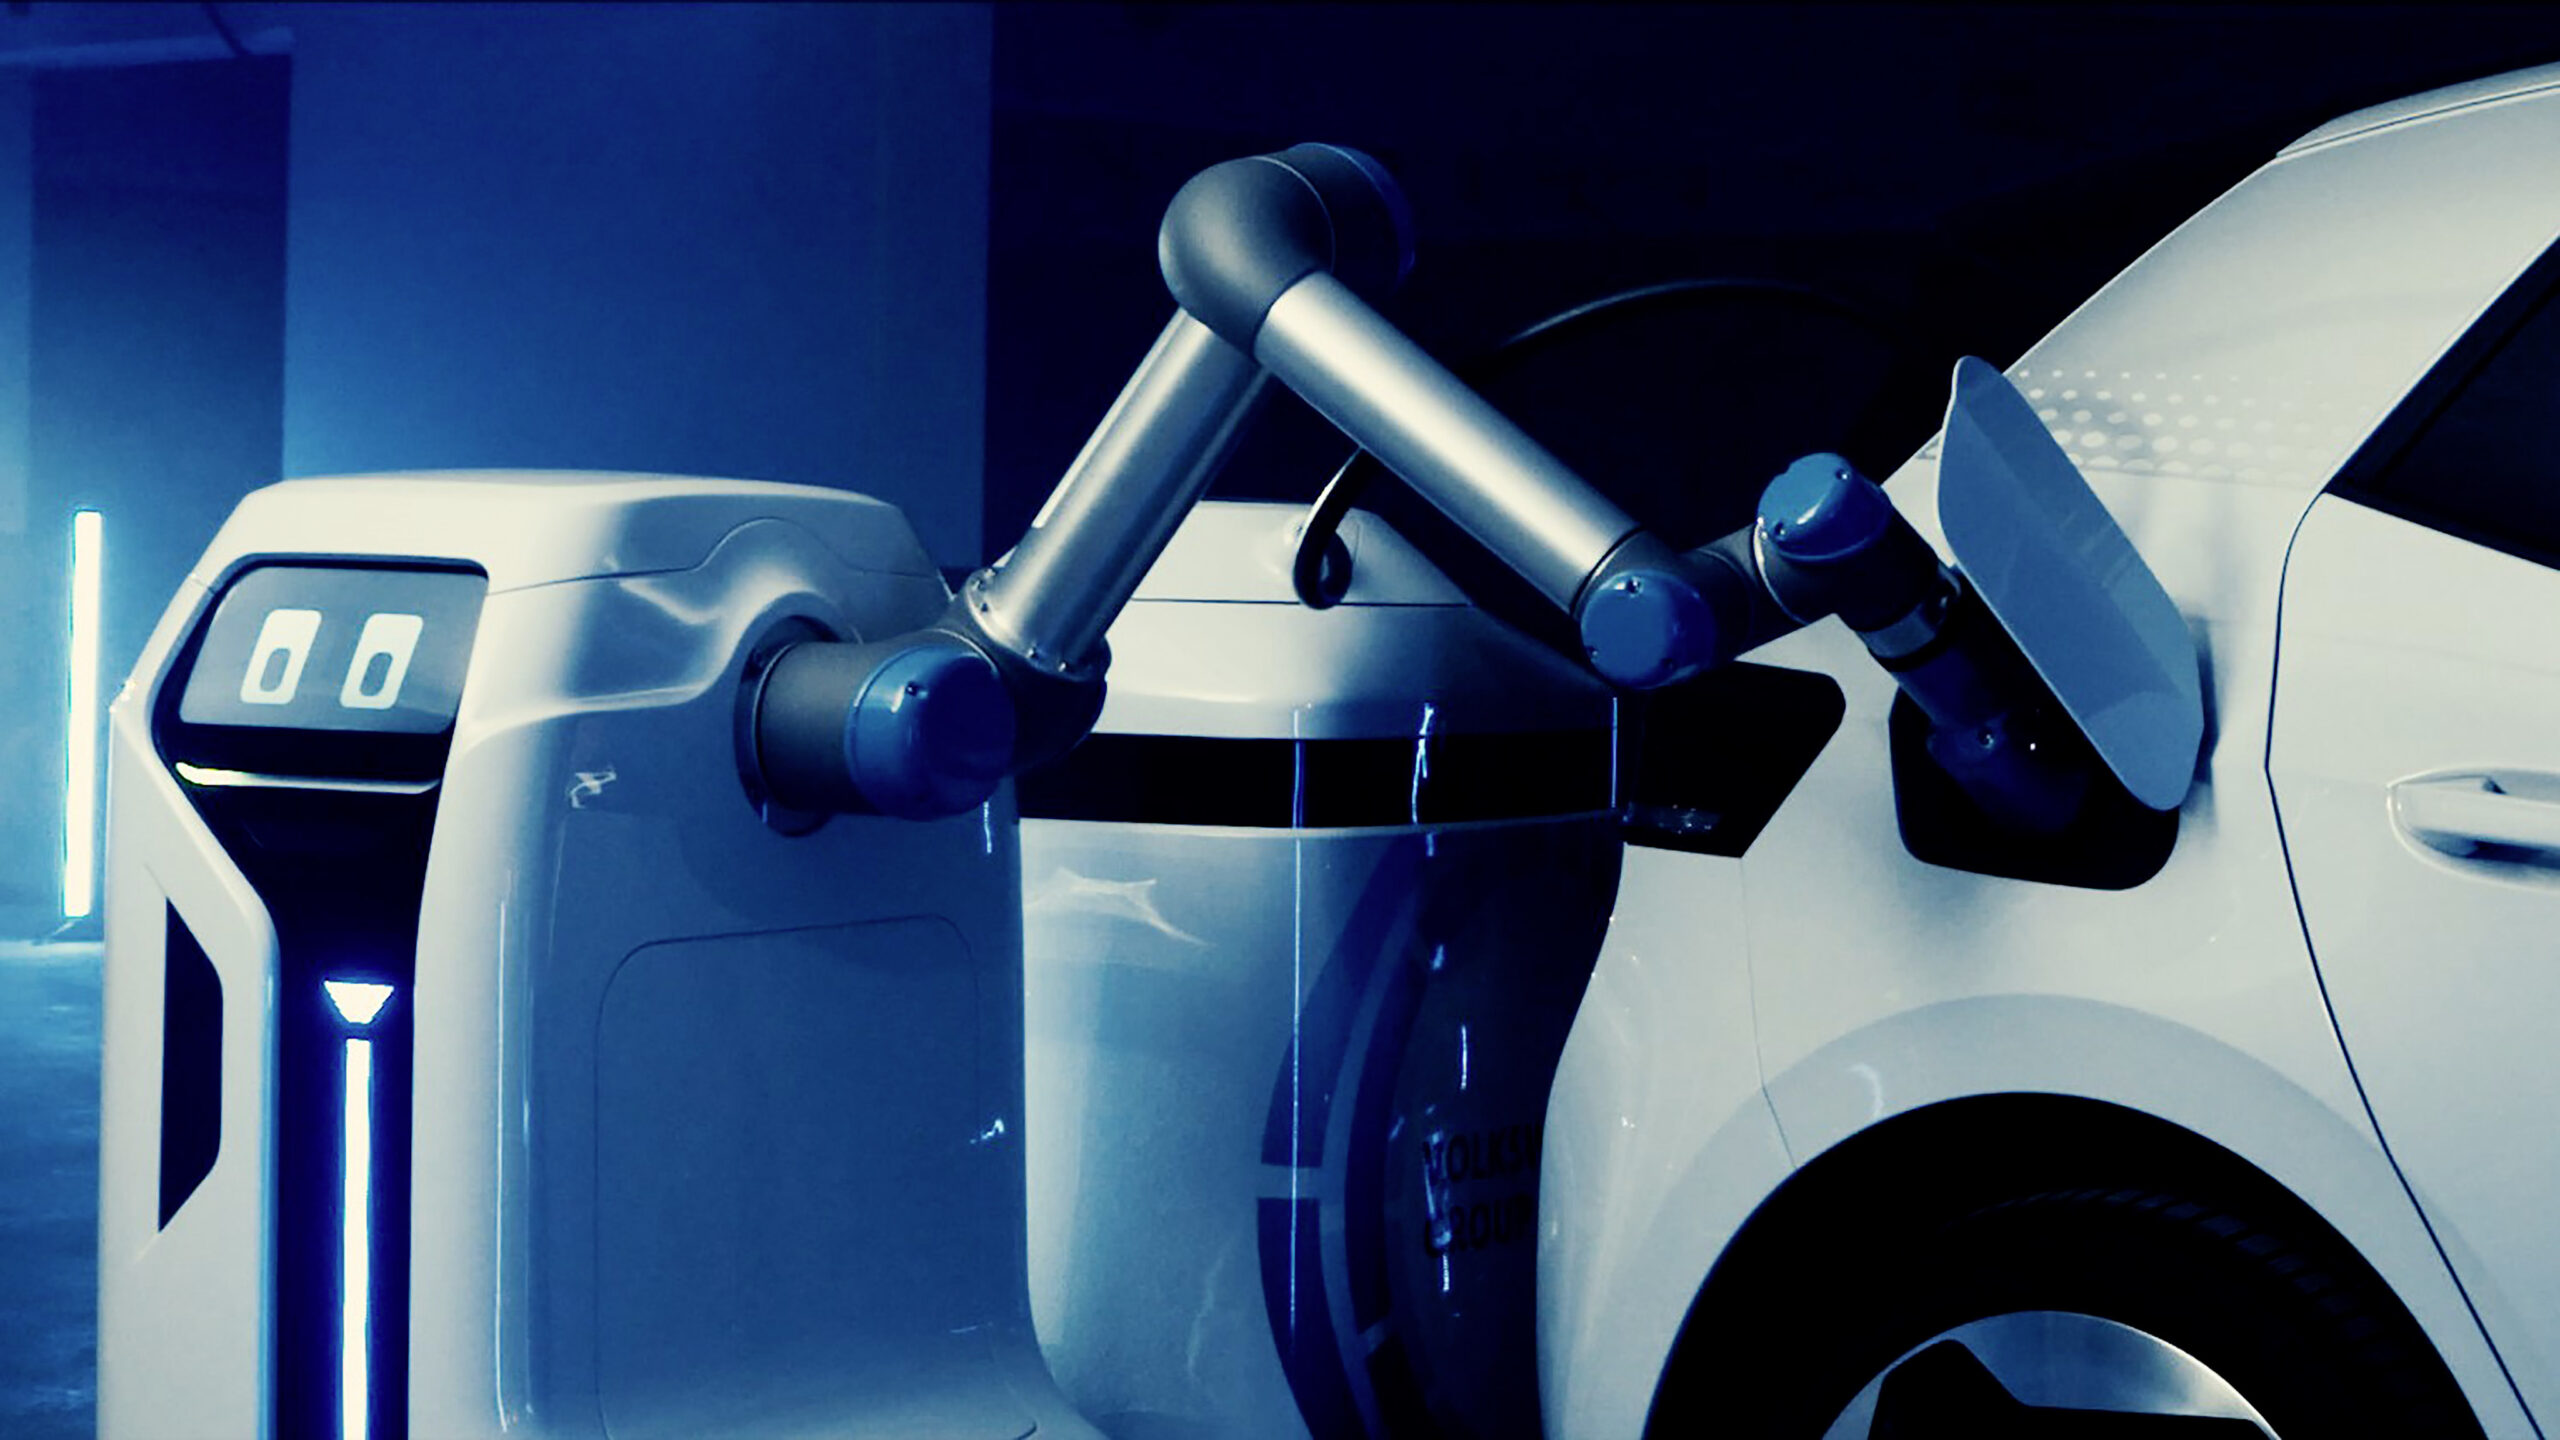 Auto elettrica, anteprima del robot Volkswagen per la ricarica